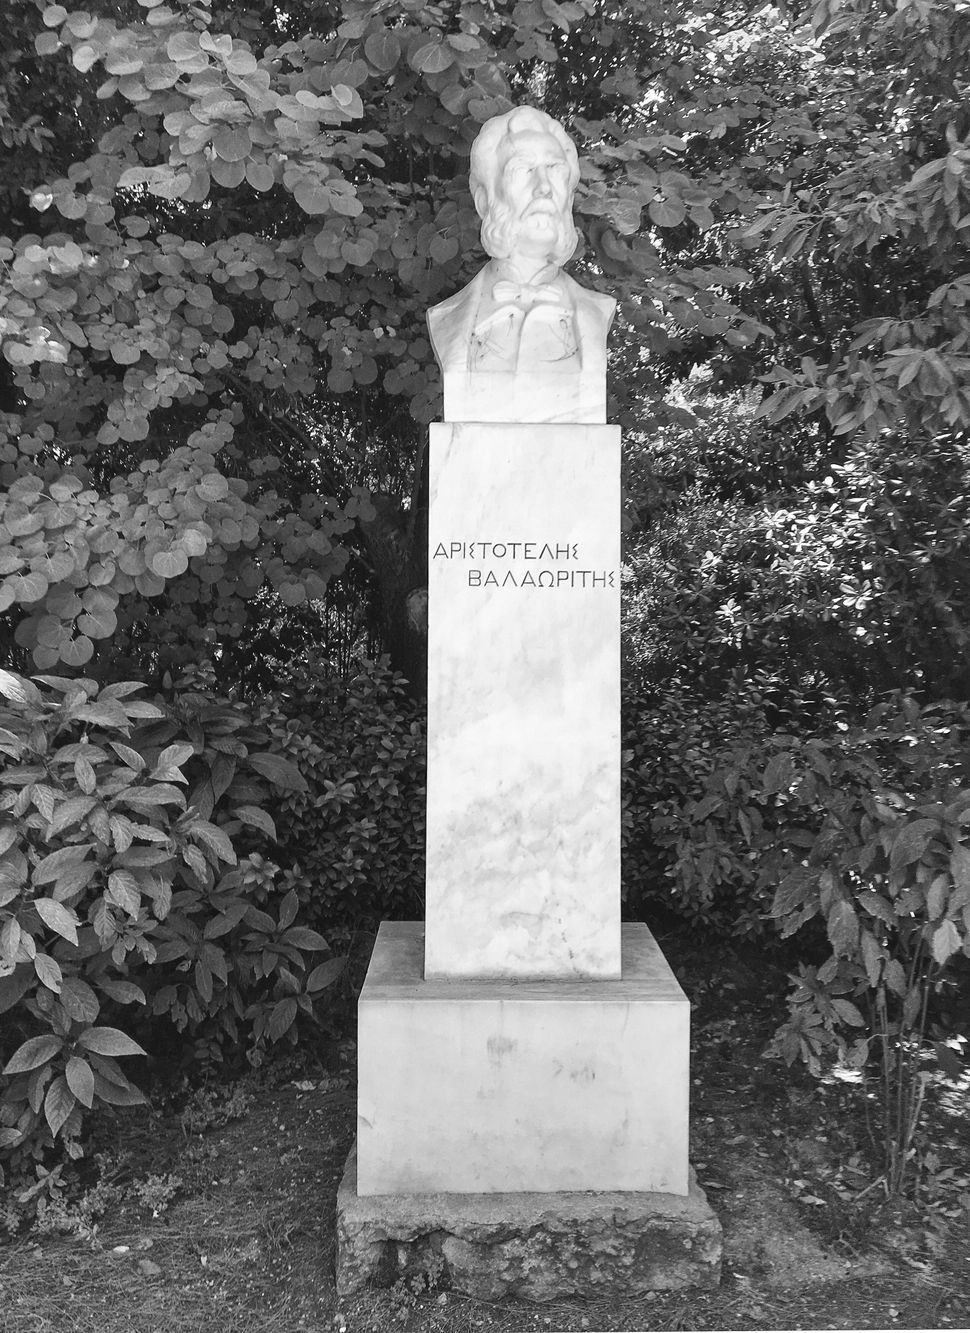 Φωκίωνος Ρωκ, Αριστοτέλης Βαλαωρίτης, 1926, μάρμαρο, Εθνικός Κήπος.